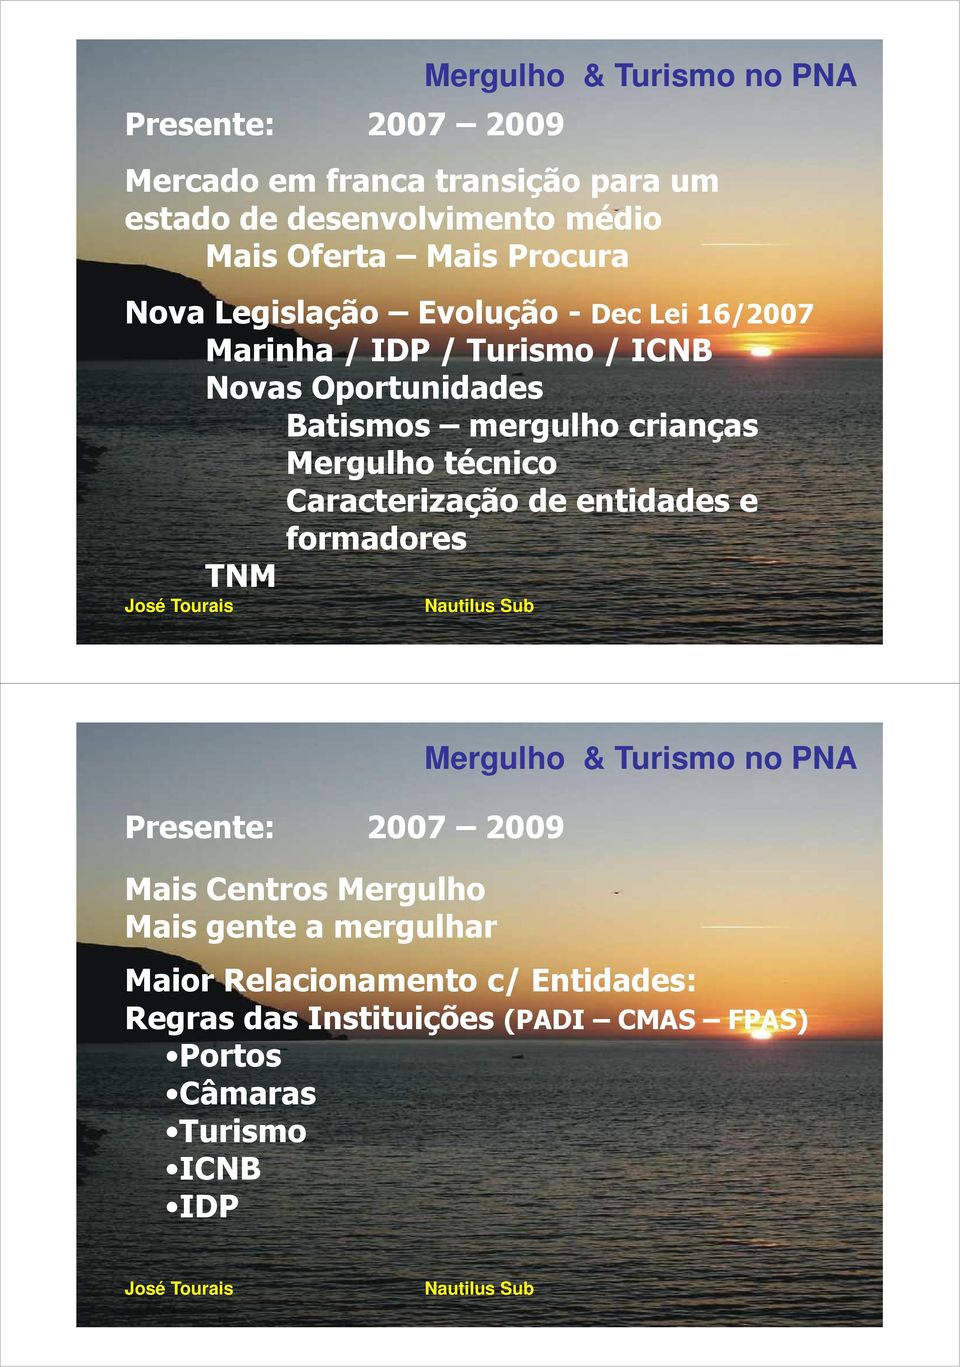 crianças Mergulho técnico Caracterização de entidades e formadores TNM Presente: 2007 2009 Mais Centros Mergulho